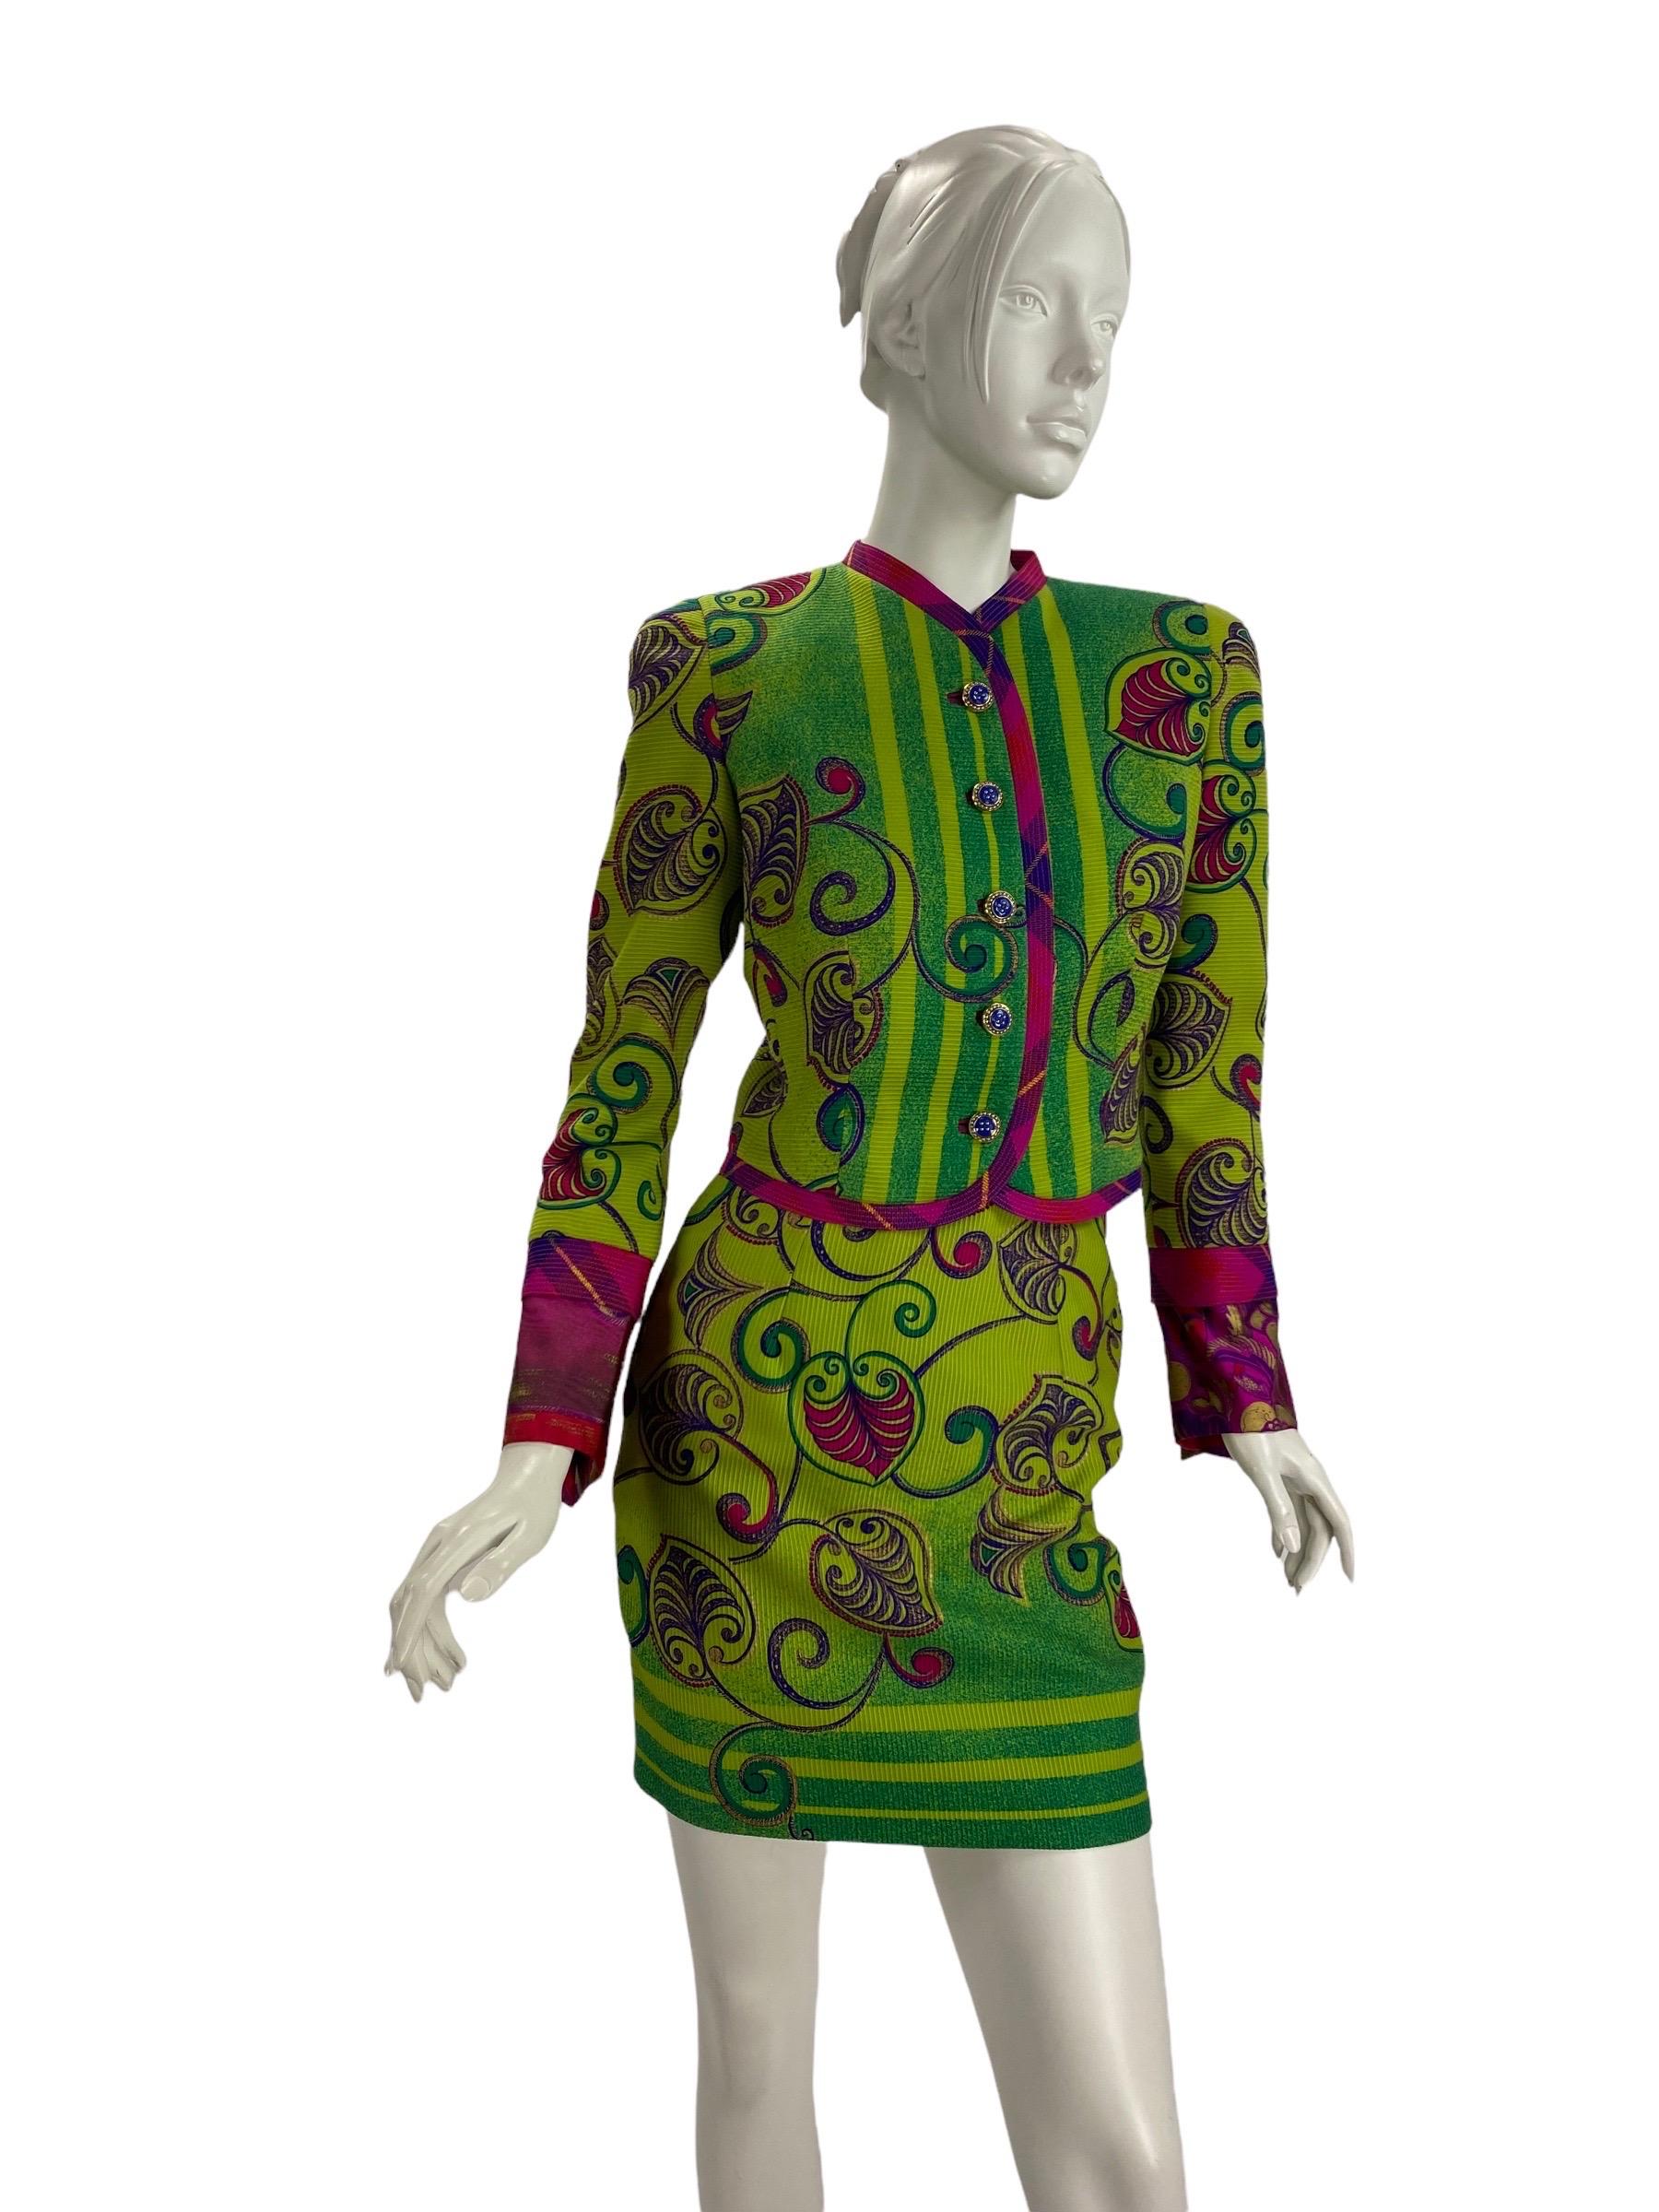 F/W 1990 Vintage Atelier Versace Runway Skirt Suit
Approx. Taille italienne 38/40 - US 2/4 ( veuillez vérifier les mesures).
Fini avec des boutons en émail, entièrement doublé en soie imprimée.
Mesures :
Veste : Longueur - 18 pouces, Poitrine - 34